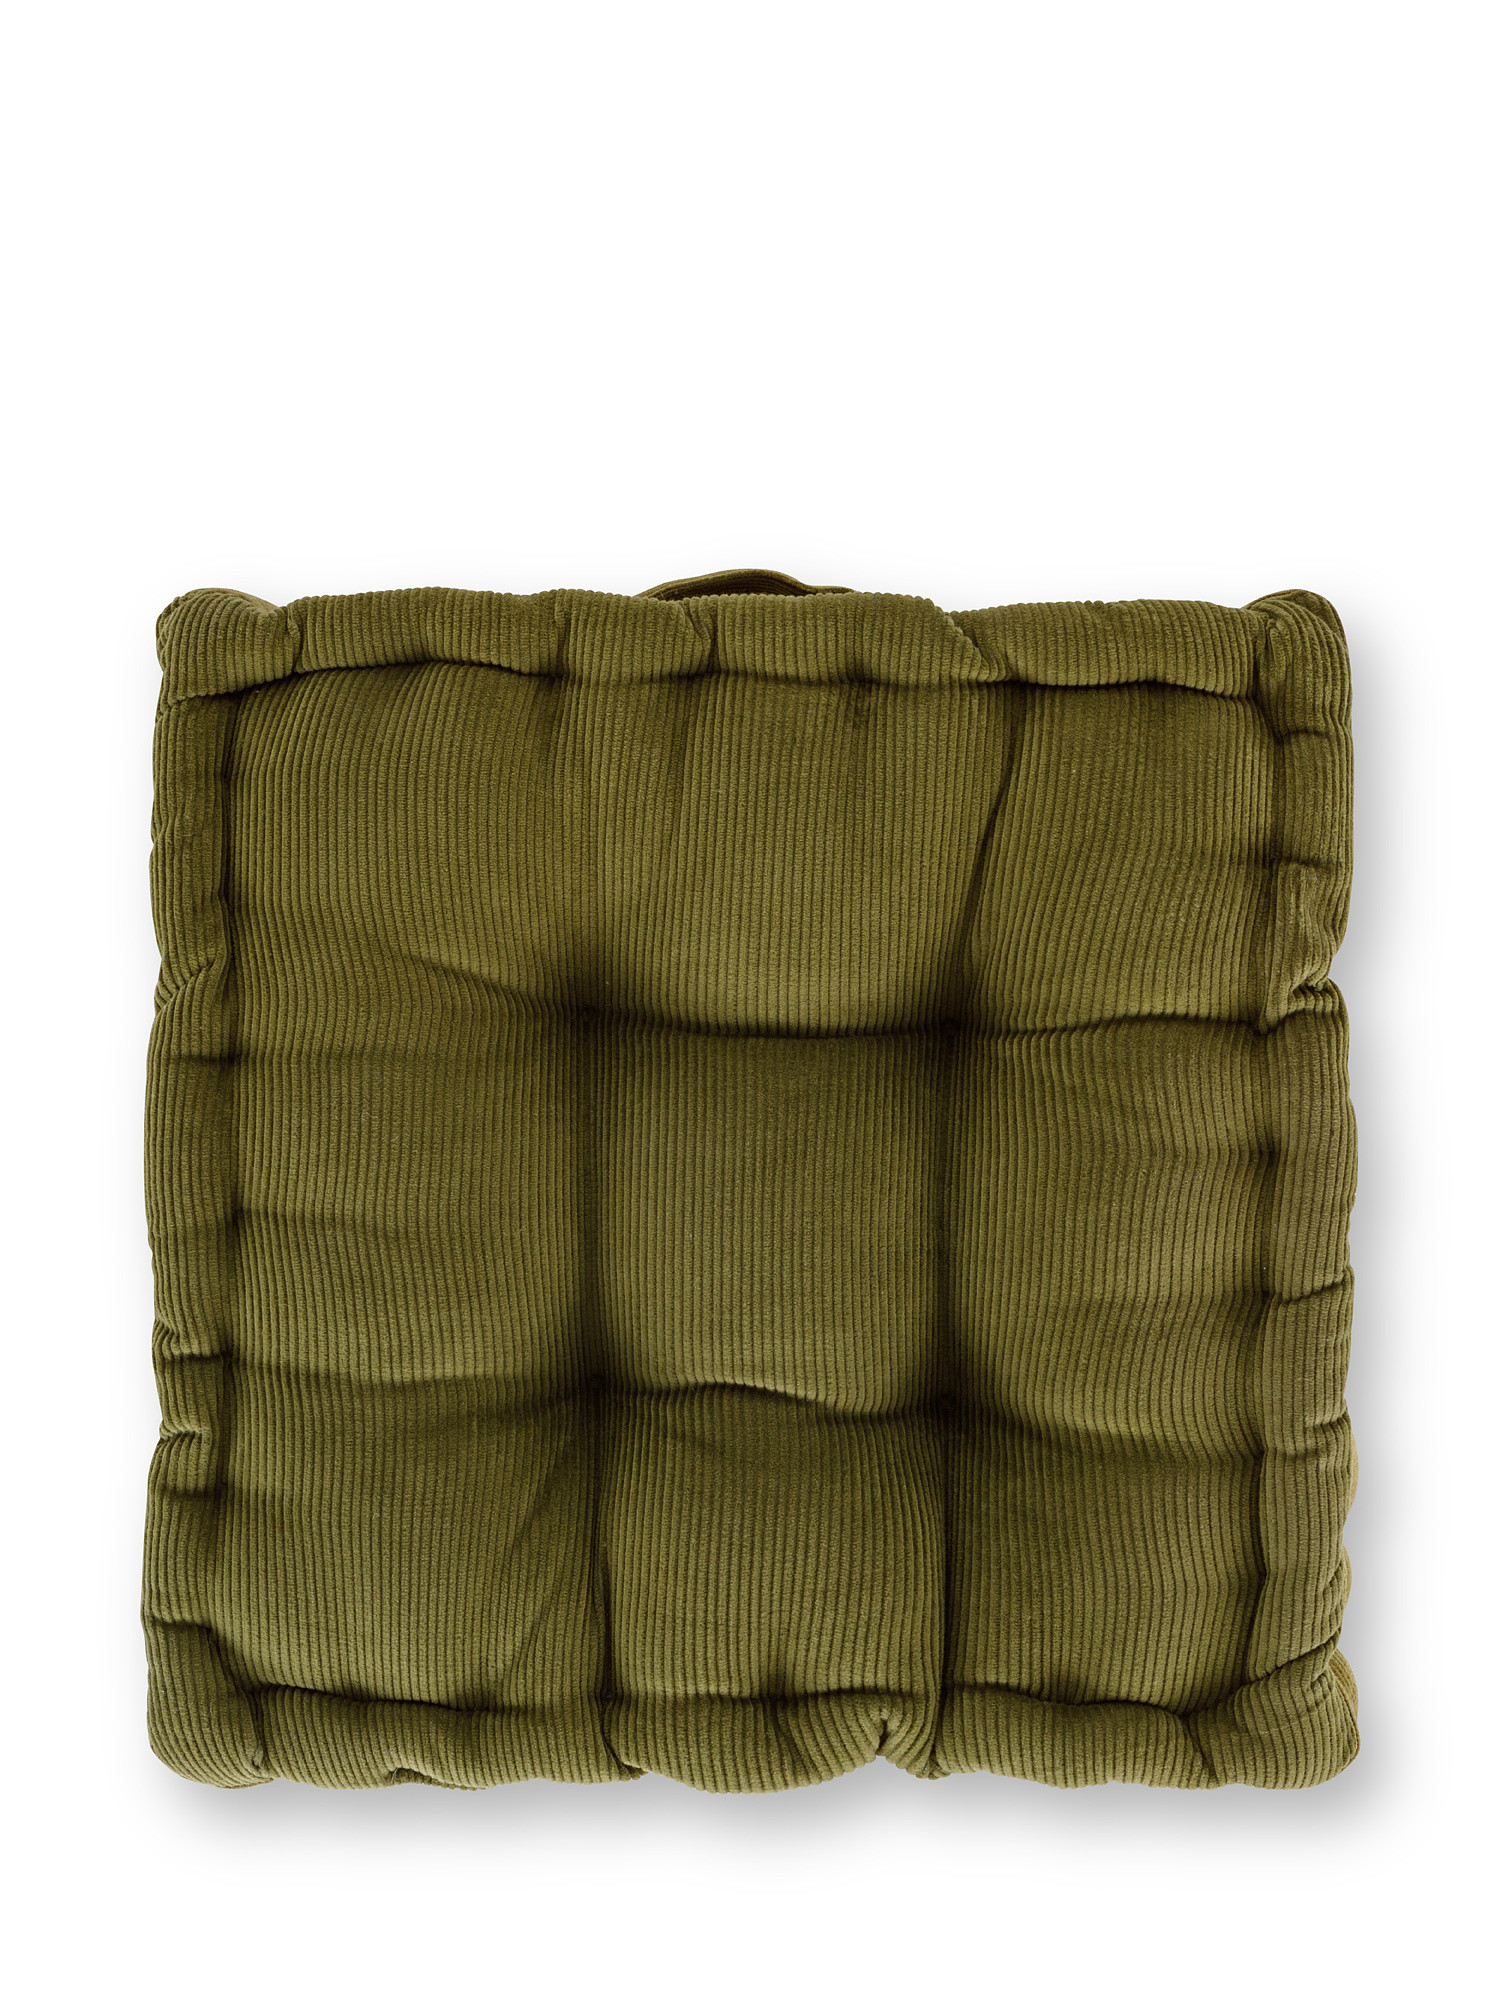 Cuscino materasso velluto tinta unita 40x40cm, Verde, large